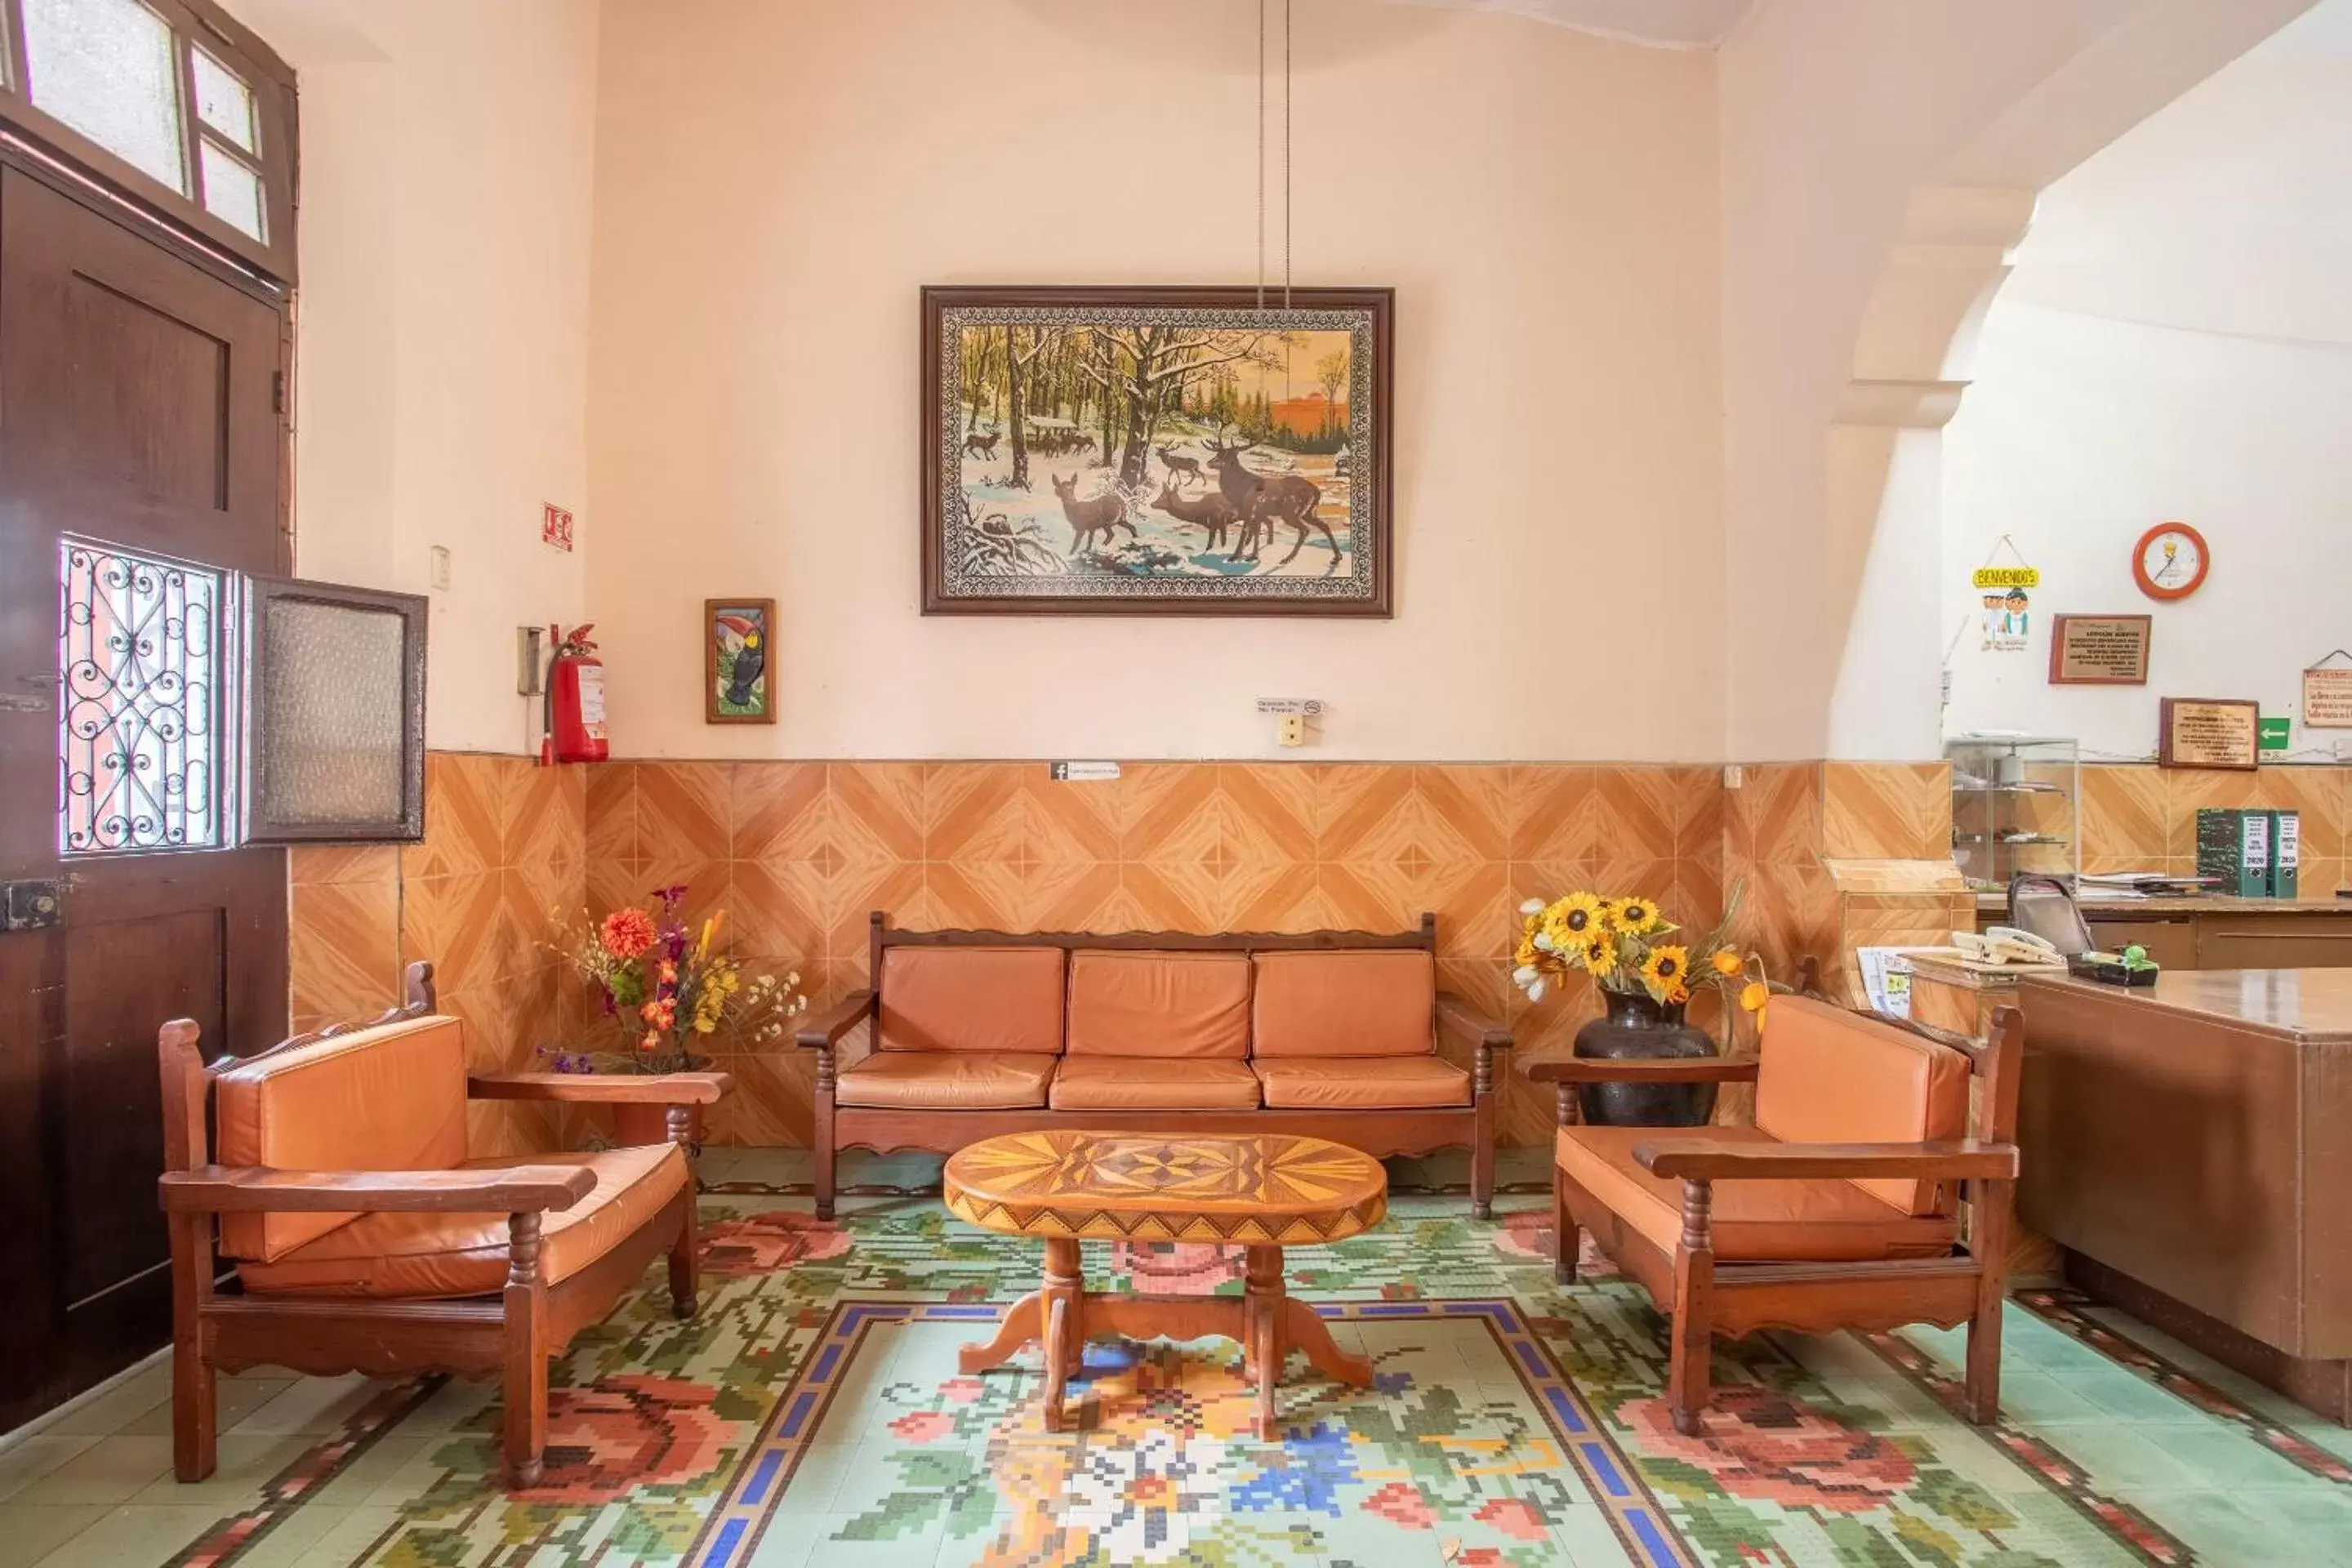 Lobby or reception in Hotel Margarita